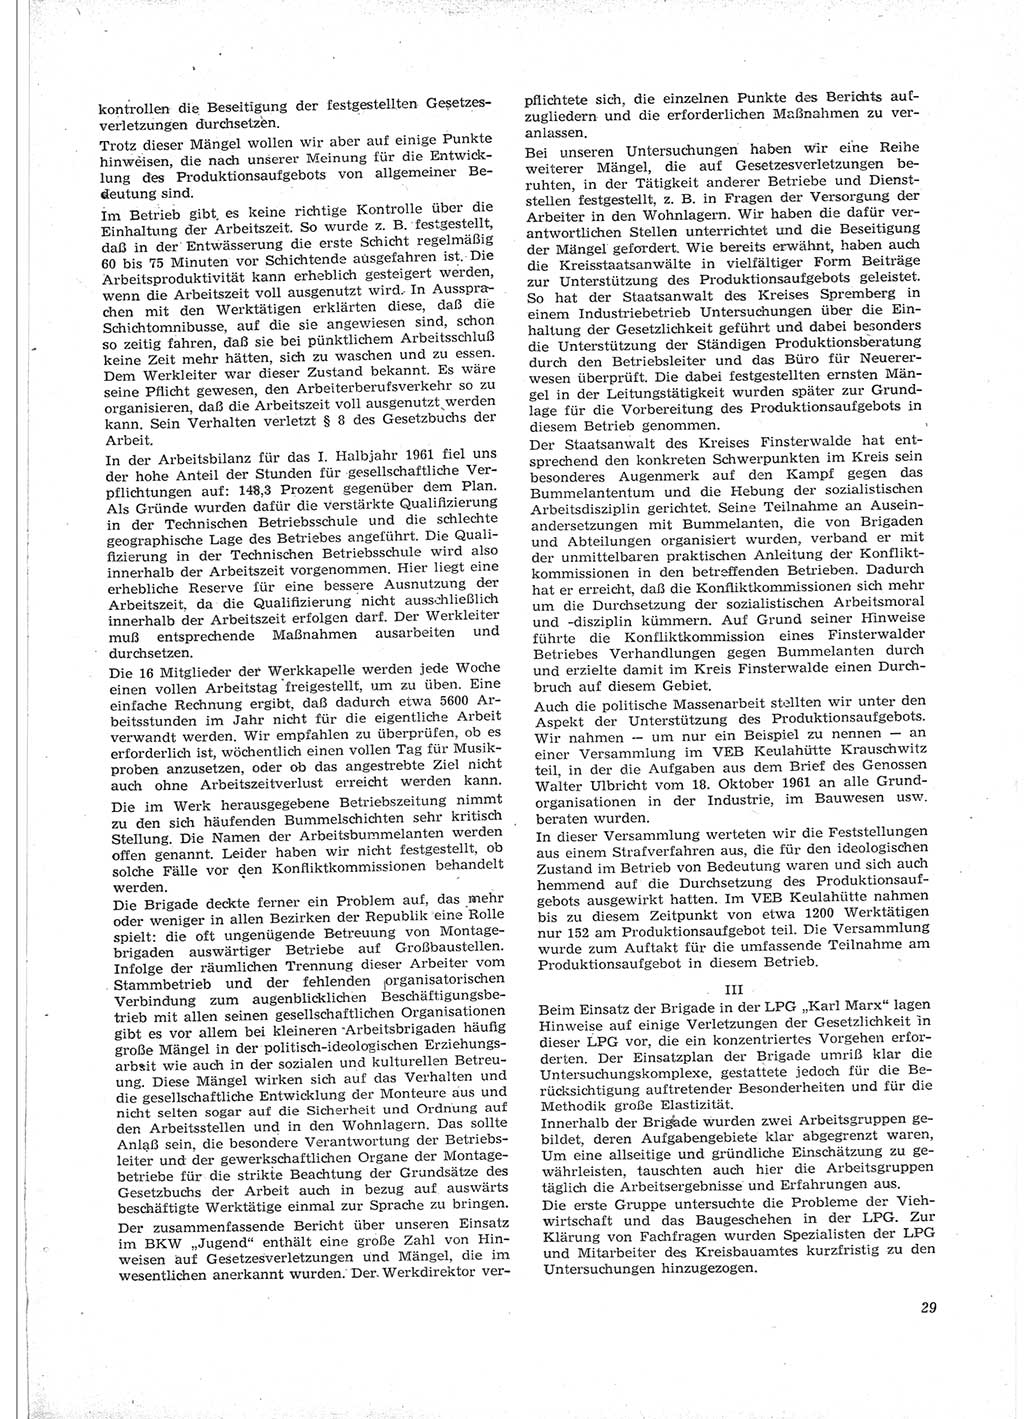 Neue Justiz (NJ), Zeitschrift für Recht und Rechtswissenschaft [Deutsche Demokratische Republik (DDR)], 16. Jahrgang 1962, Seite 29 (NJ DDR 1962, S. 29)